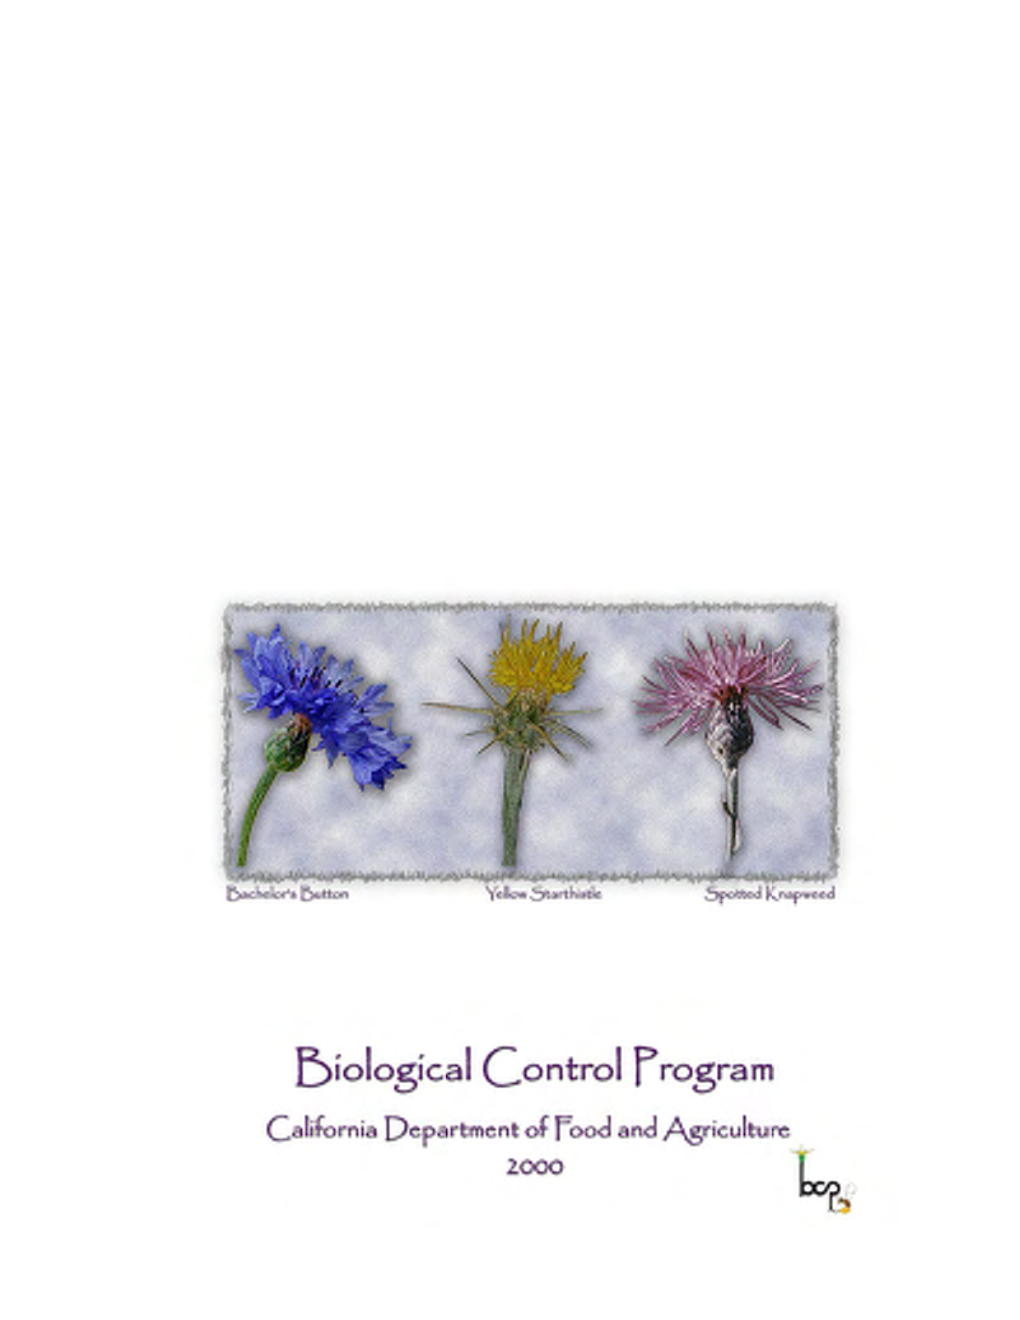 Biological Control Program 2000 Summary